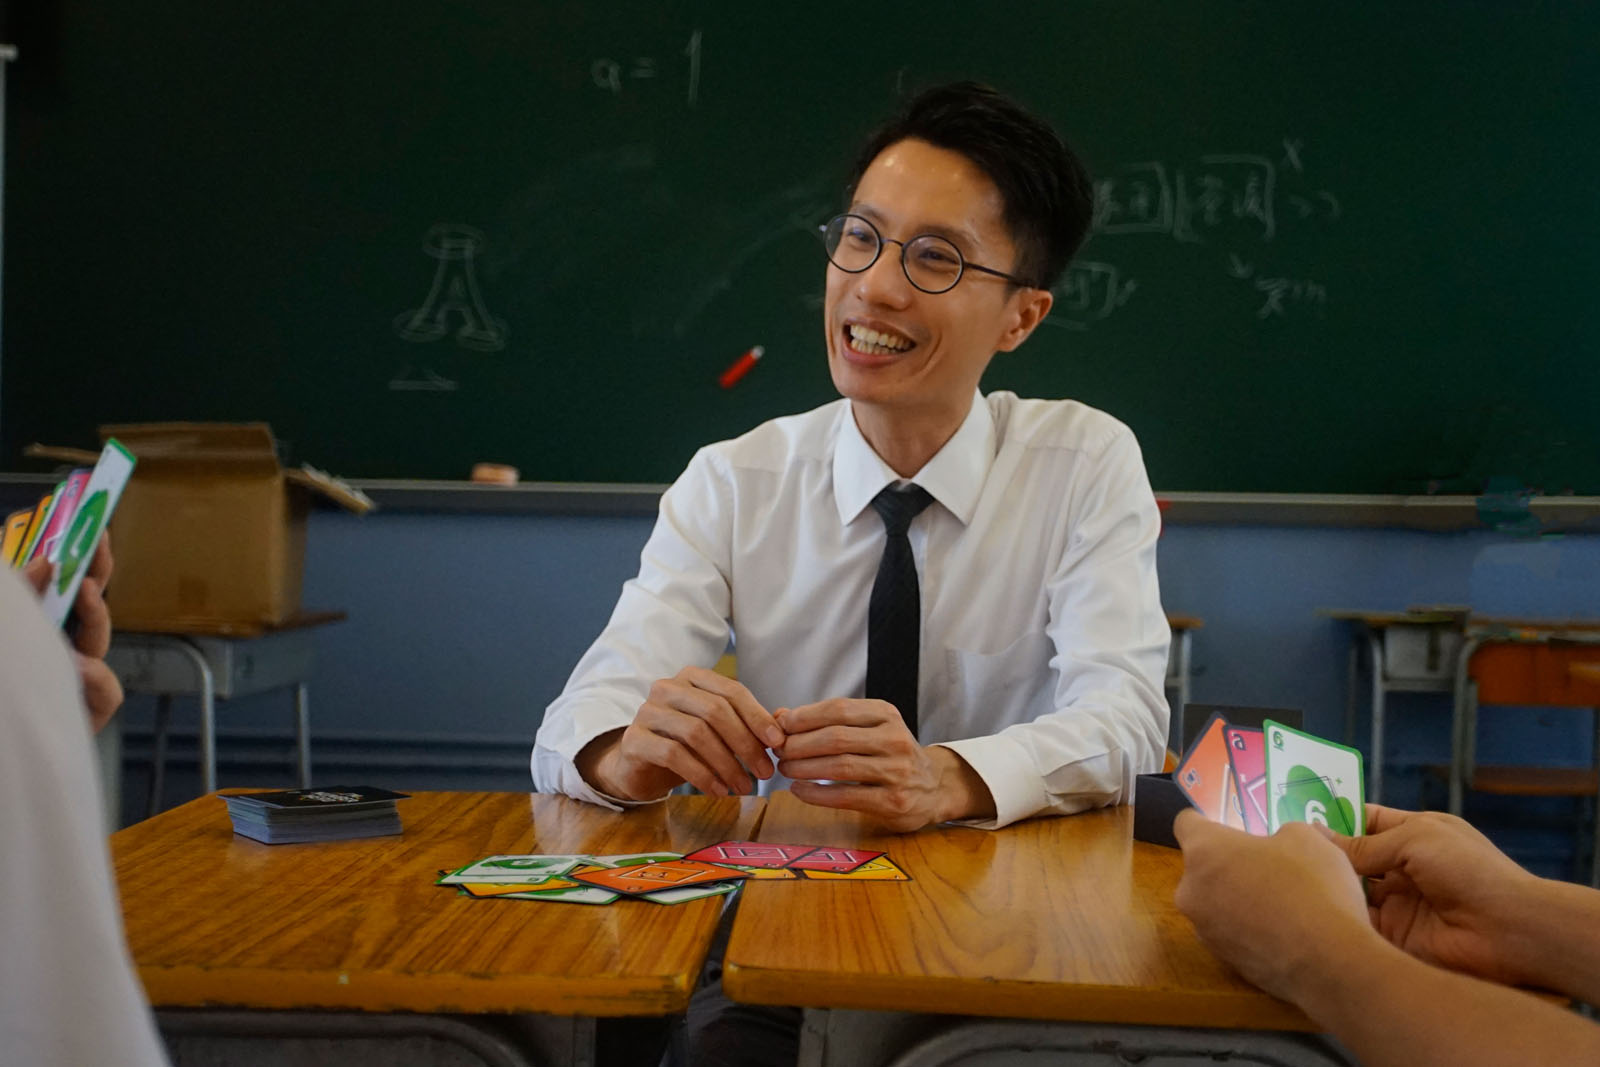 李求恩纪念中学数学科副主任刘颂文认为卡牌能提升学生学习数学的兴趣